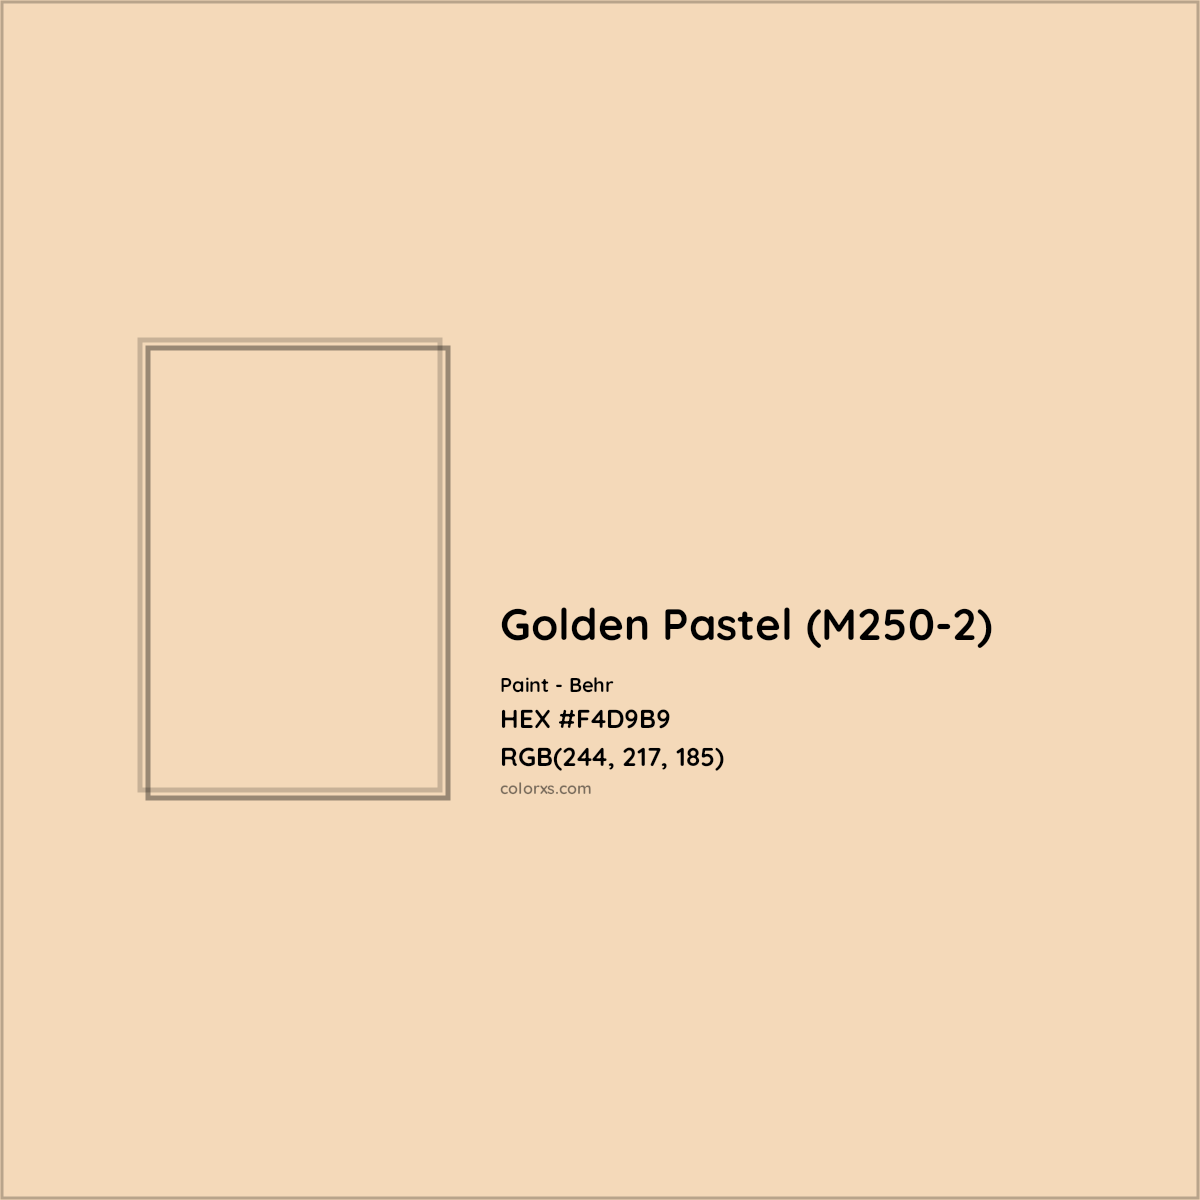 HEX #F4D9B9 Golden Pastel (M250-2) Paint Behr - Color Code